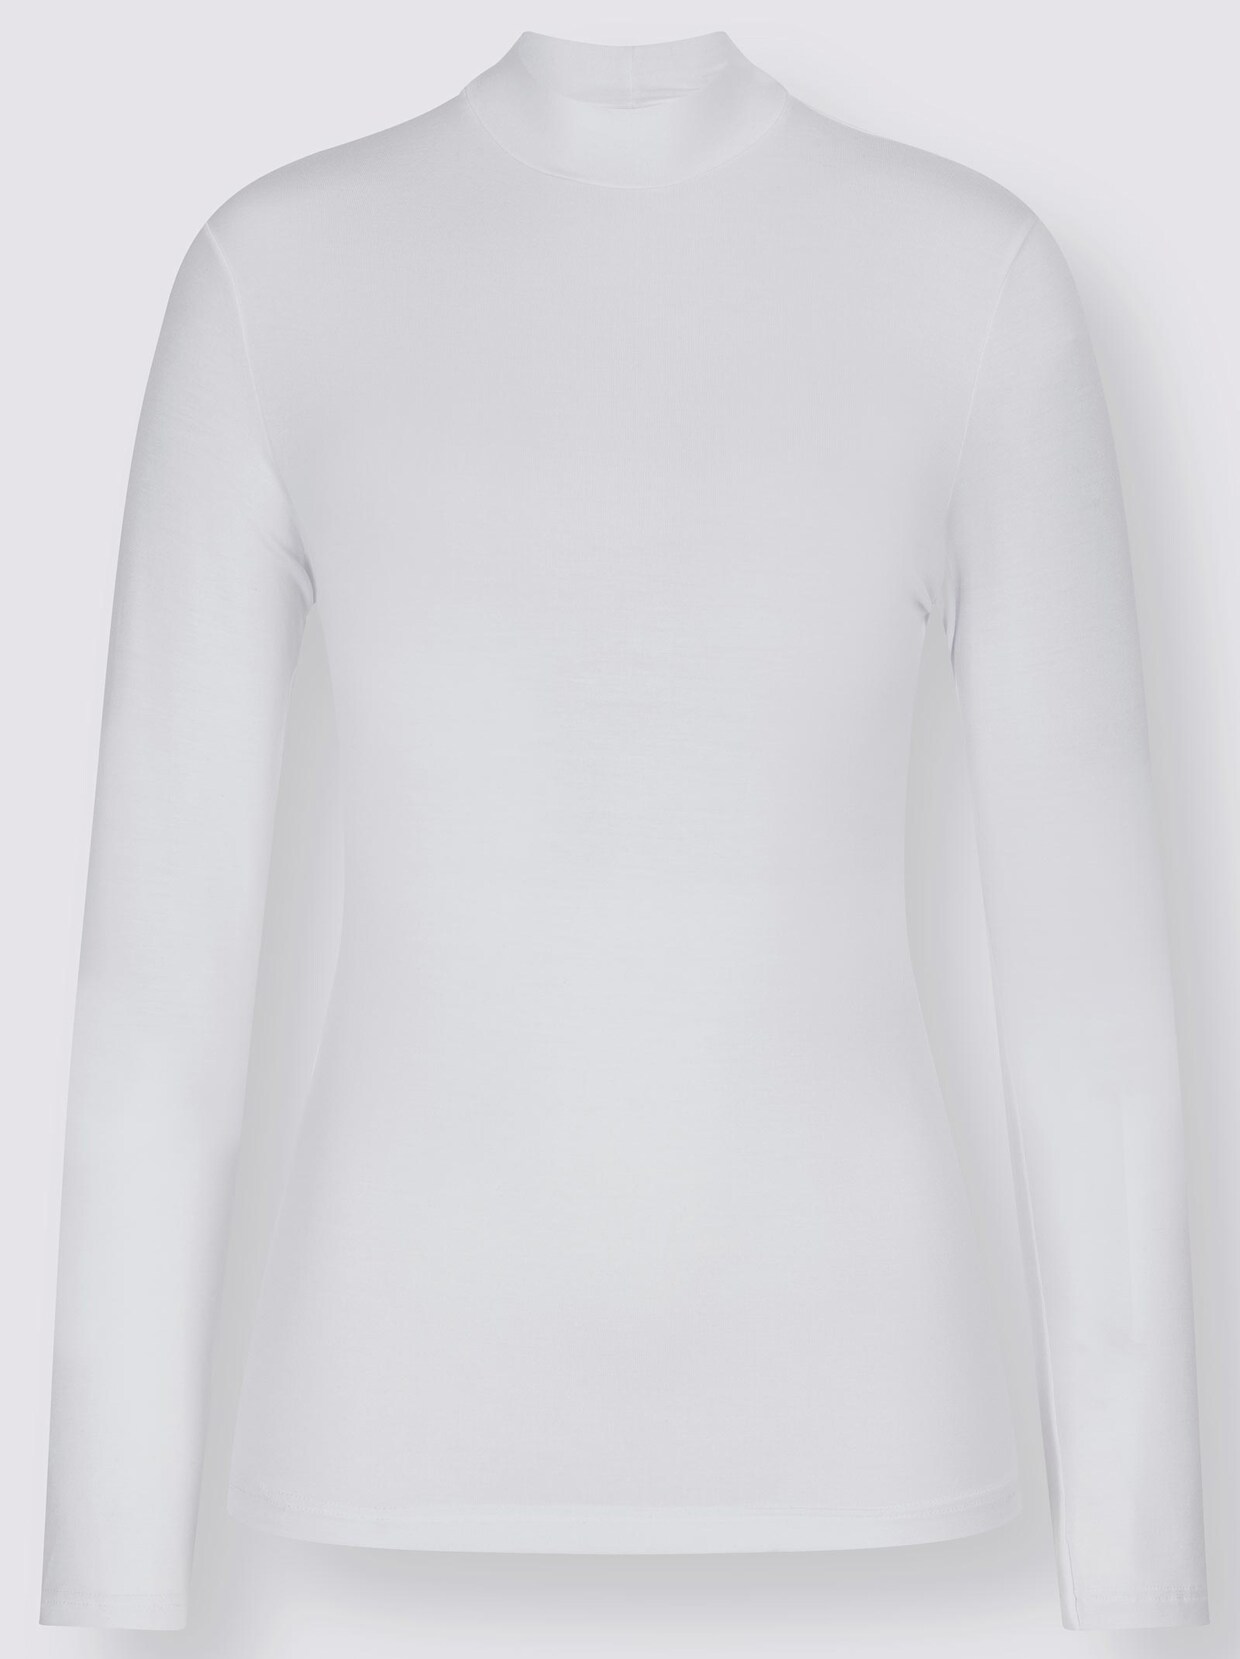 wäschepur Langarm-Shirt - weiß